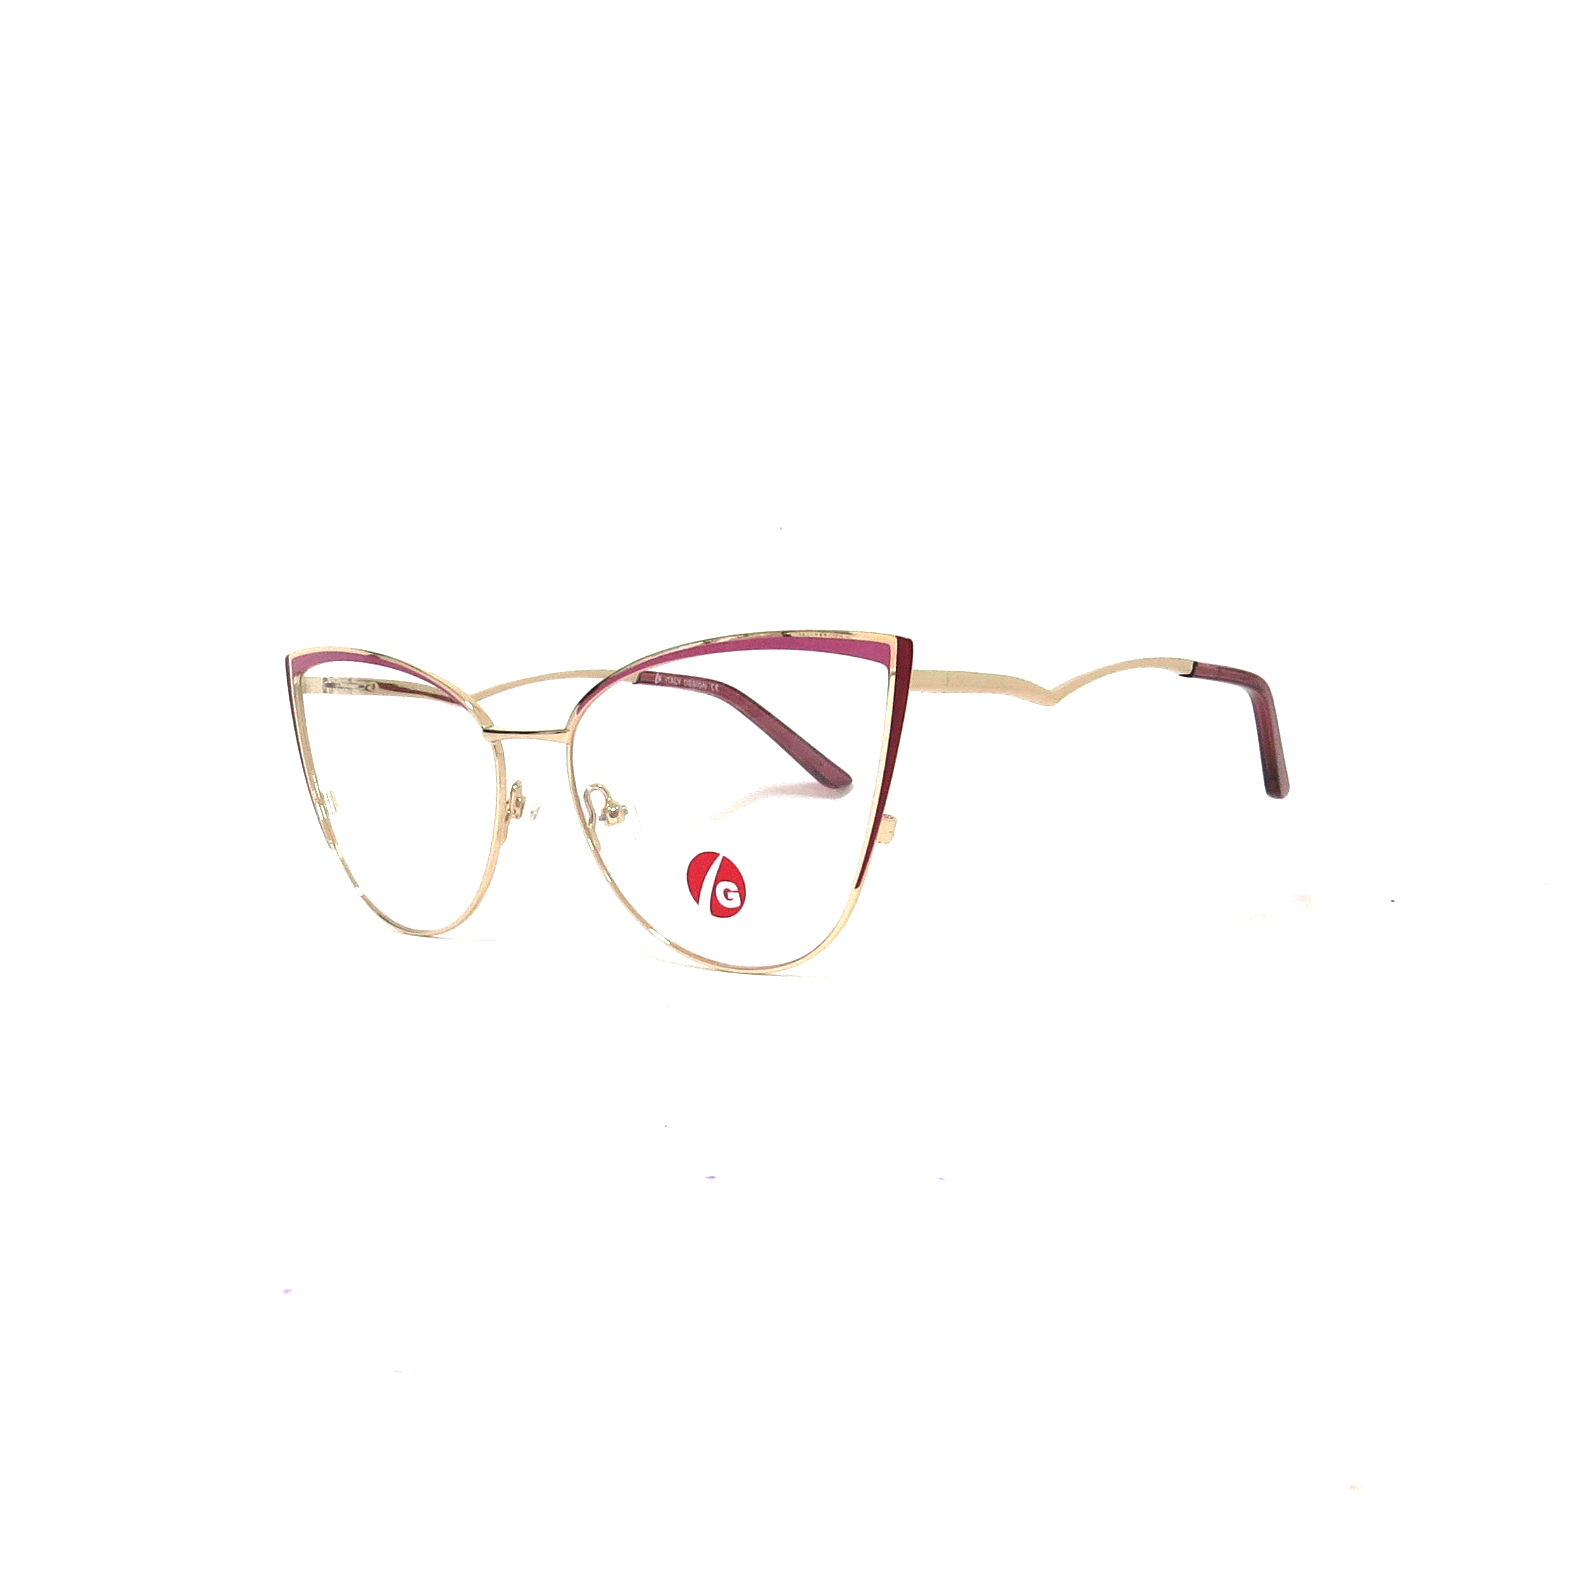 Misericordioso menos A merced de Óptica las gafas | BORAJI - Óptica las gafas